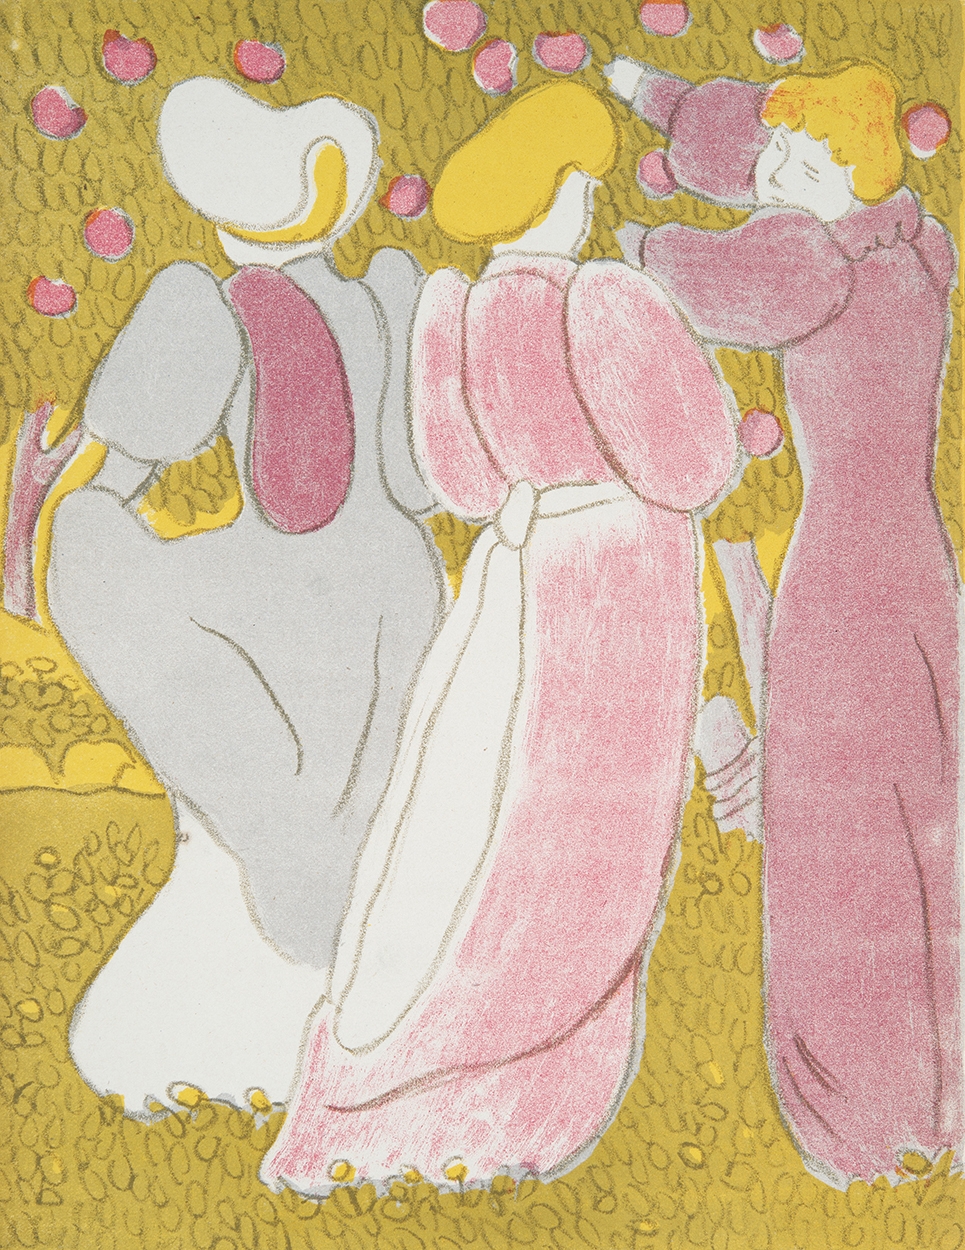 Rippl-Rónai József (1861-1927) Georges Rodenbach: Les Vierges c. kötetének illusztrációja, 1895